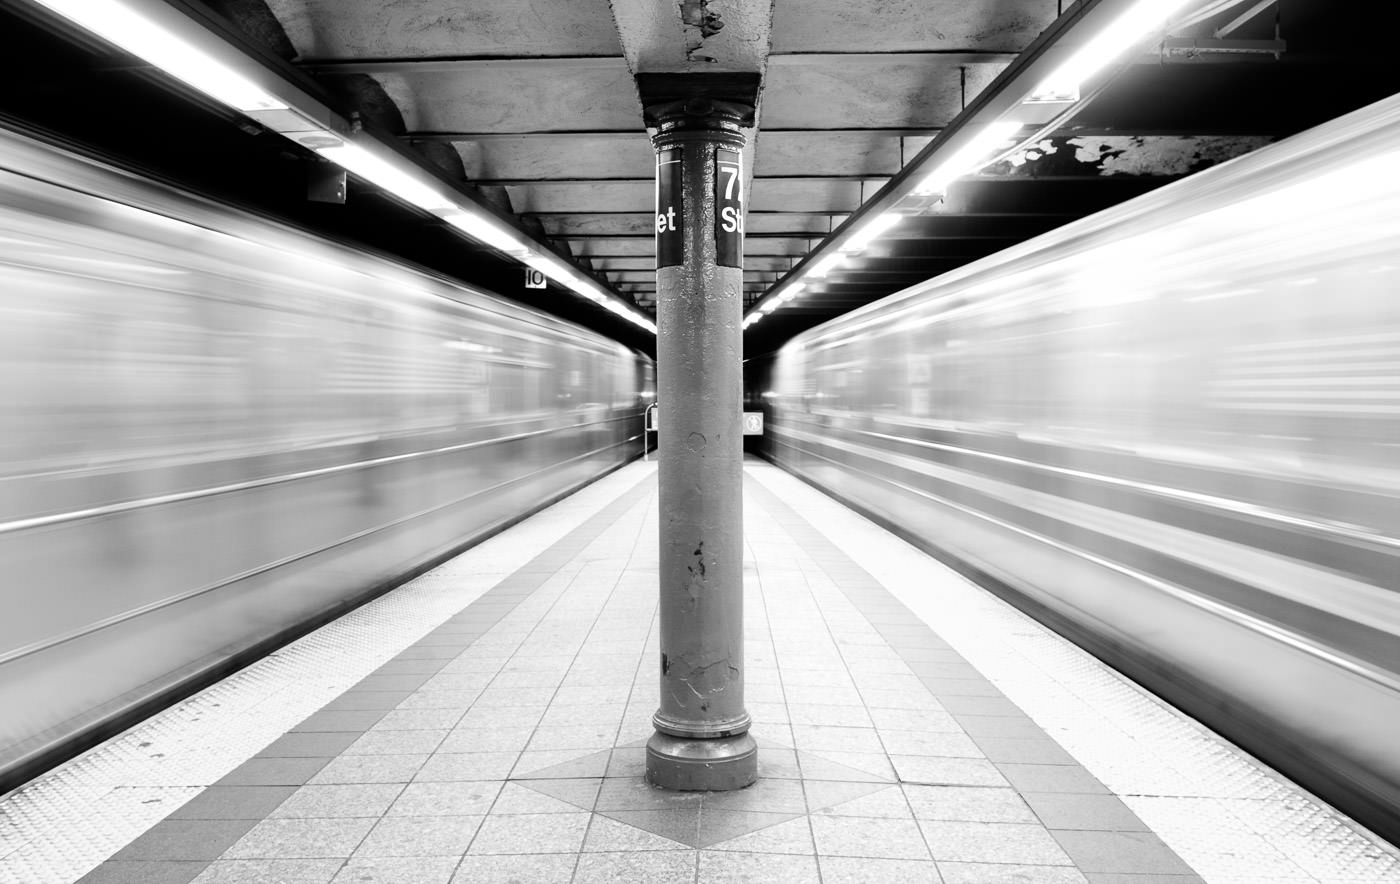 NYC - metro ' s die langs beide zijden van het perron rijden, waardoor vage ruimte rond het centrum ontstaat.